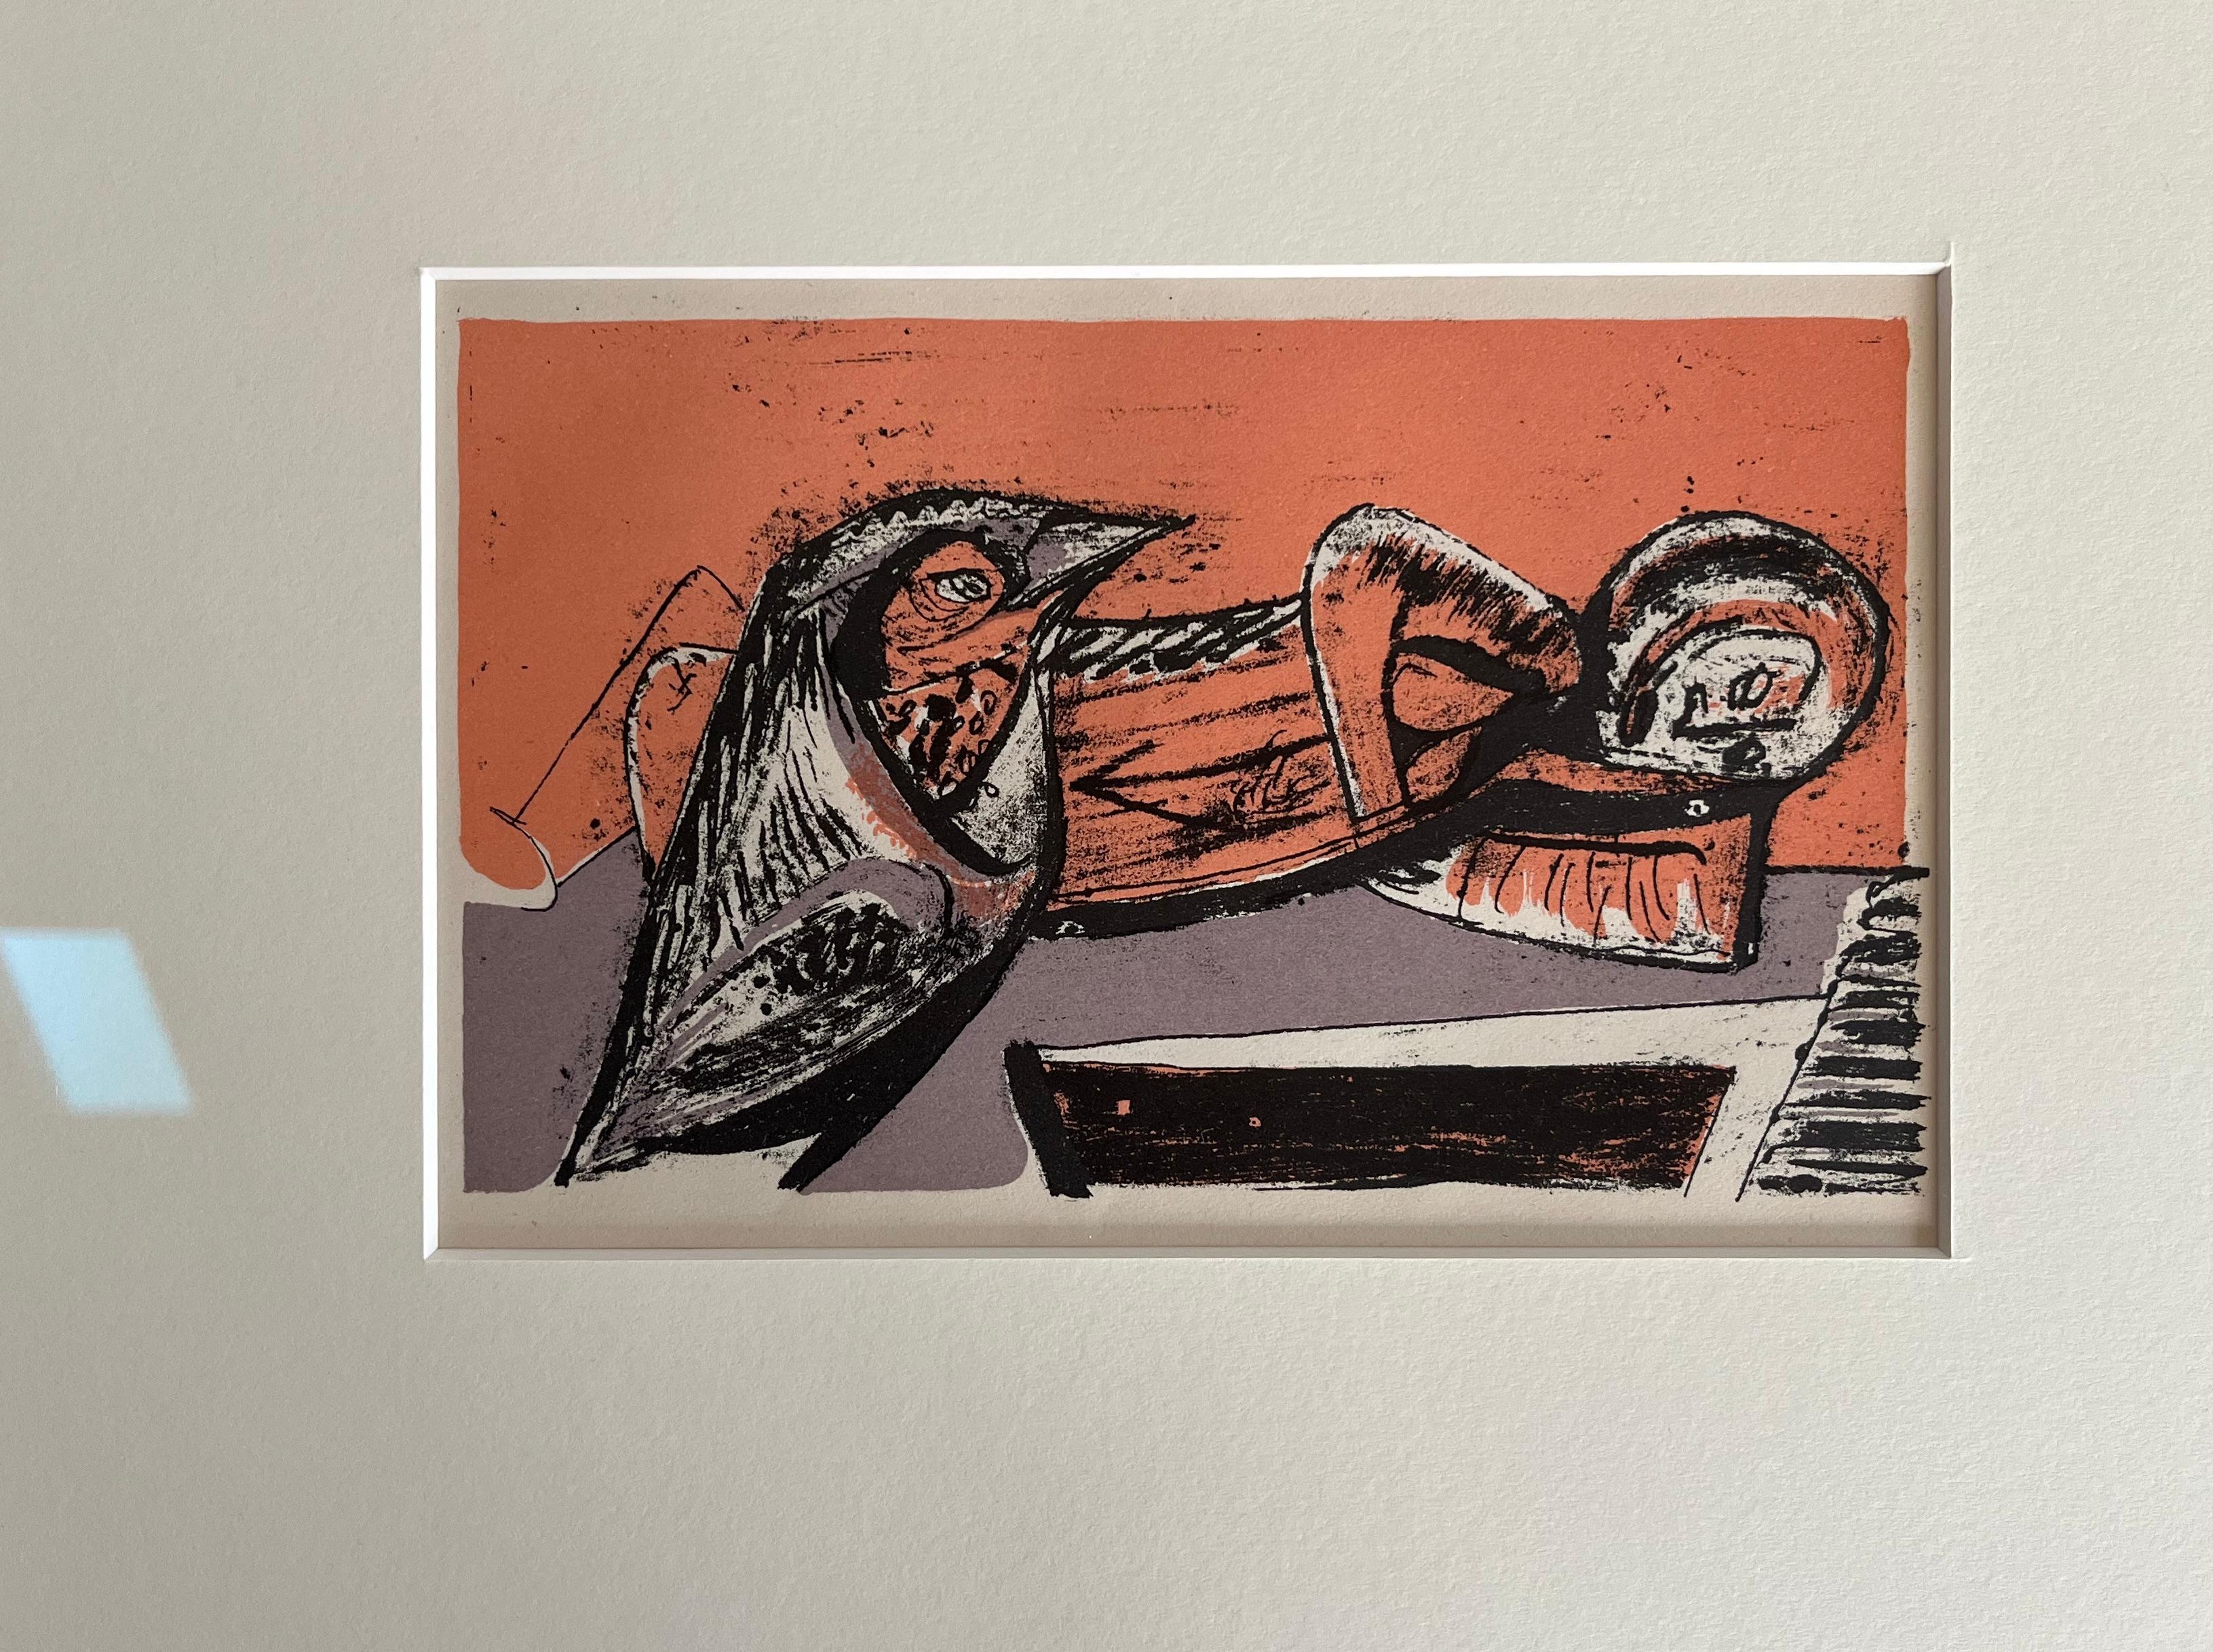 Ces merveilleuses lithographies issues de l'imagination de l'artiste de Glasgow Robert Colquhoun sont pleines de couleurs et de dynamisme.

Robert Colquhoun (1914-1962)
Poèmes du sommeil et du rêve
Trois lithographies imprimées en couleur
Encadré